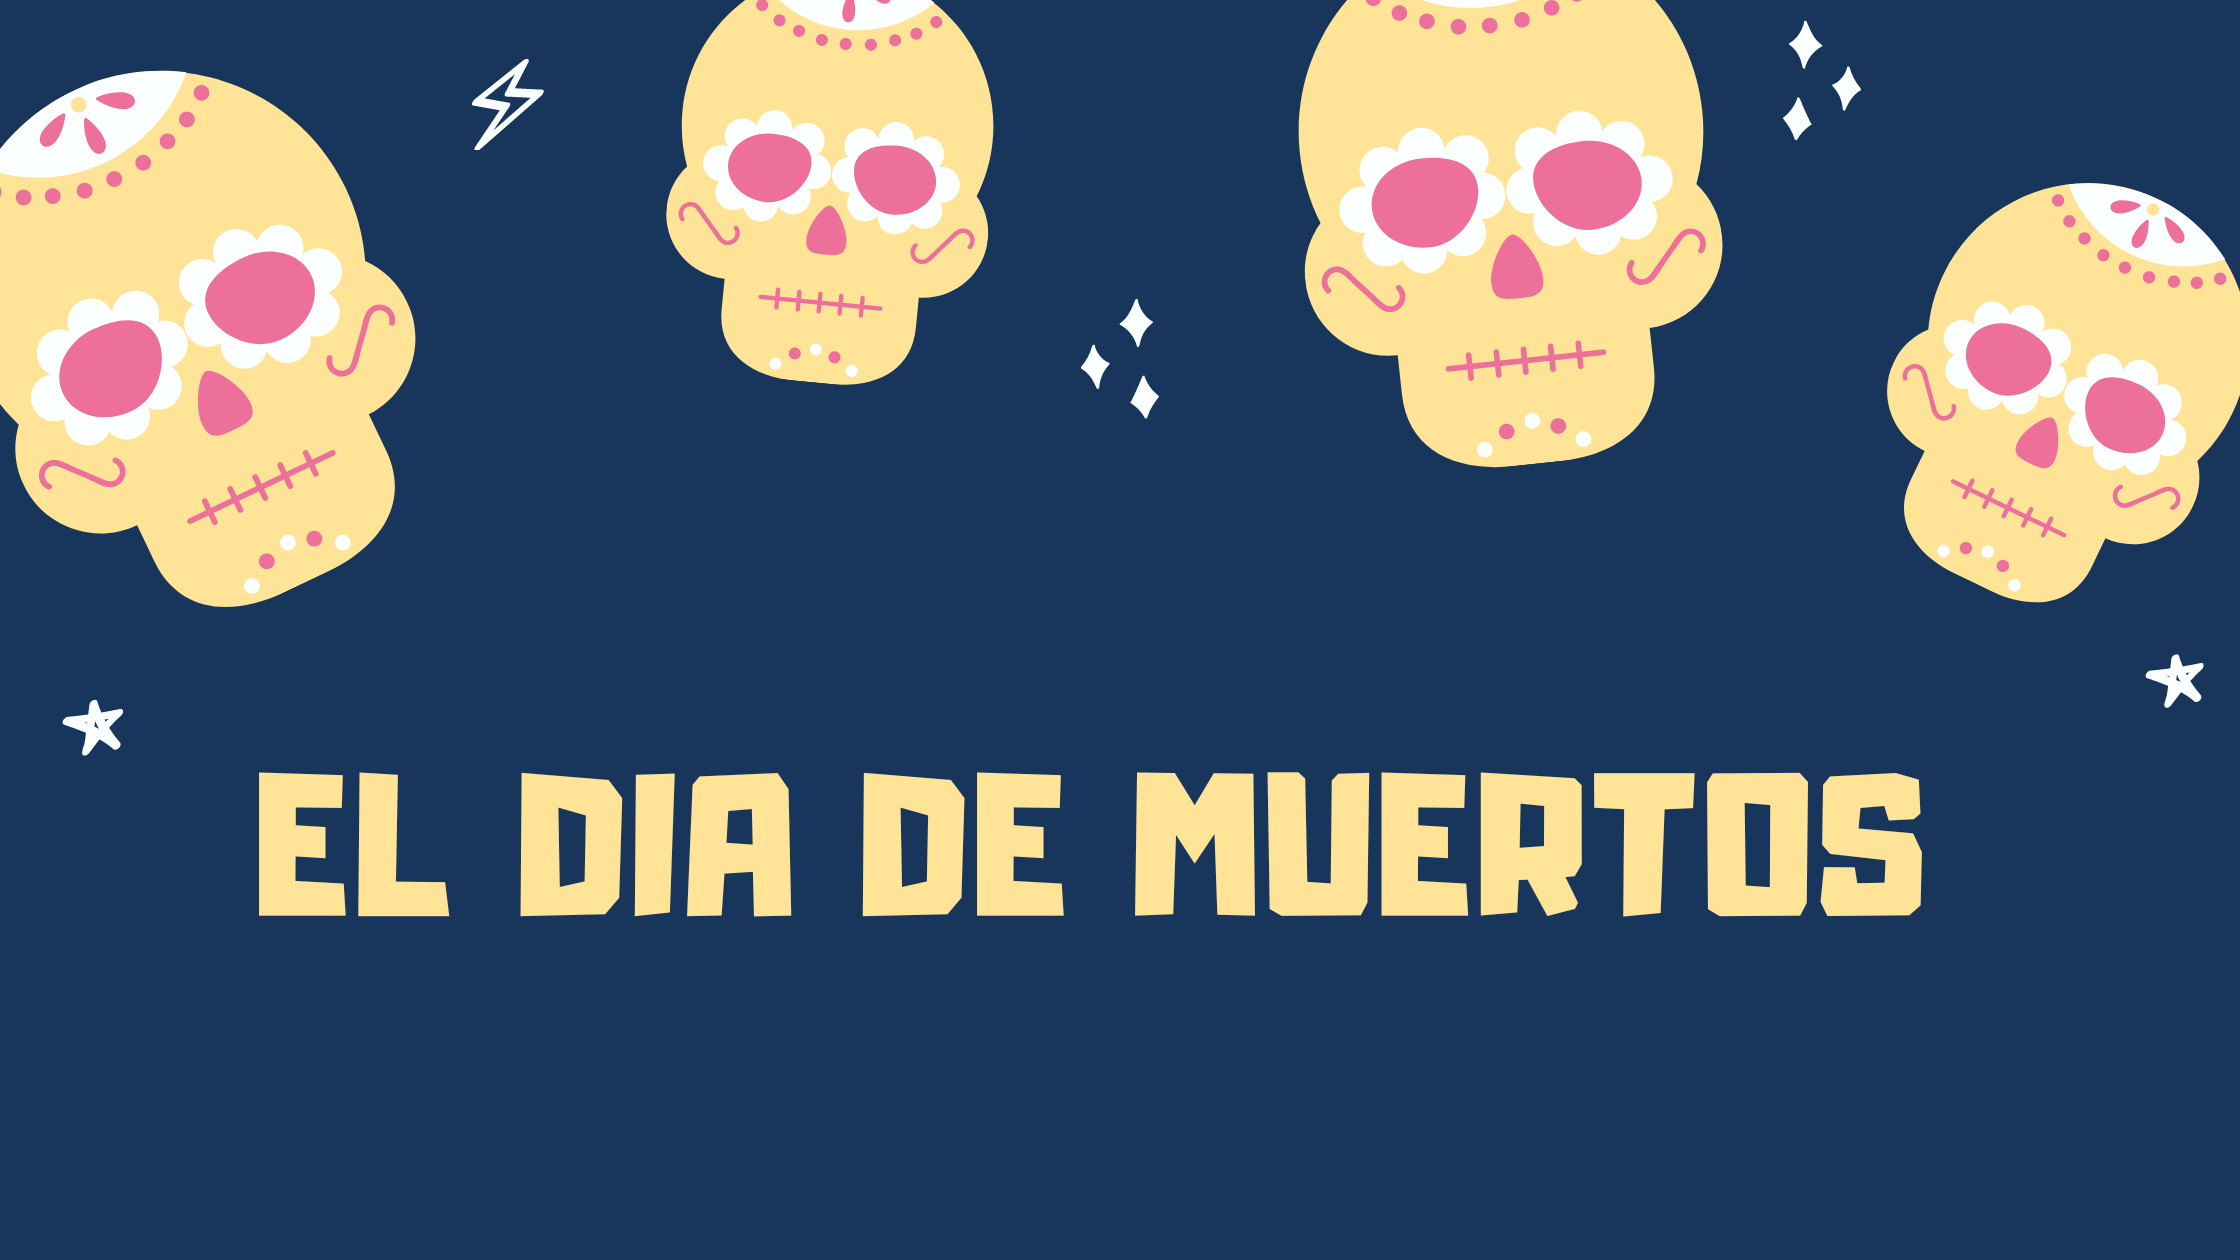 El Dia de Muertos or Day of the Dead